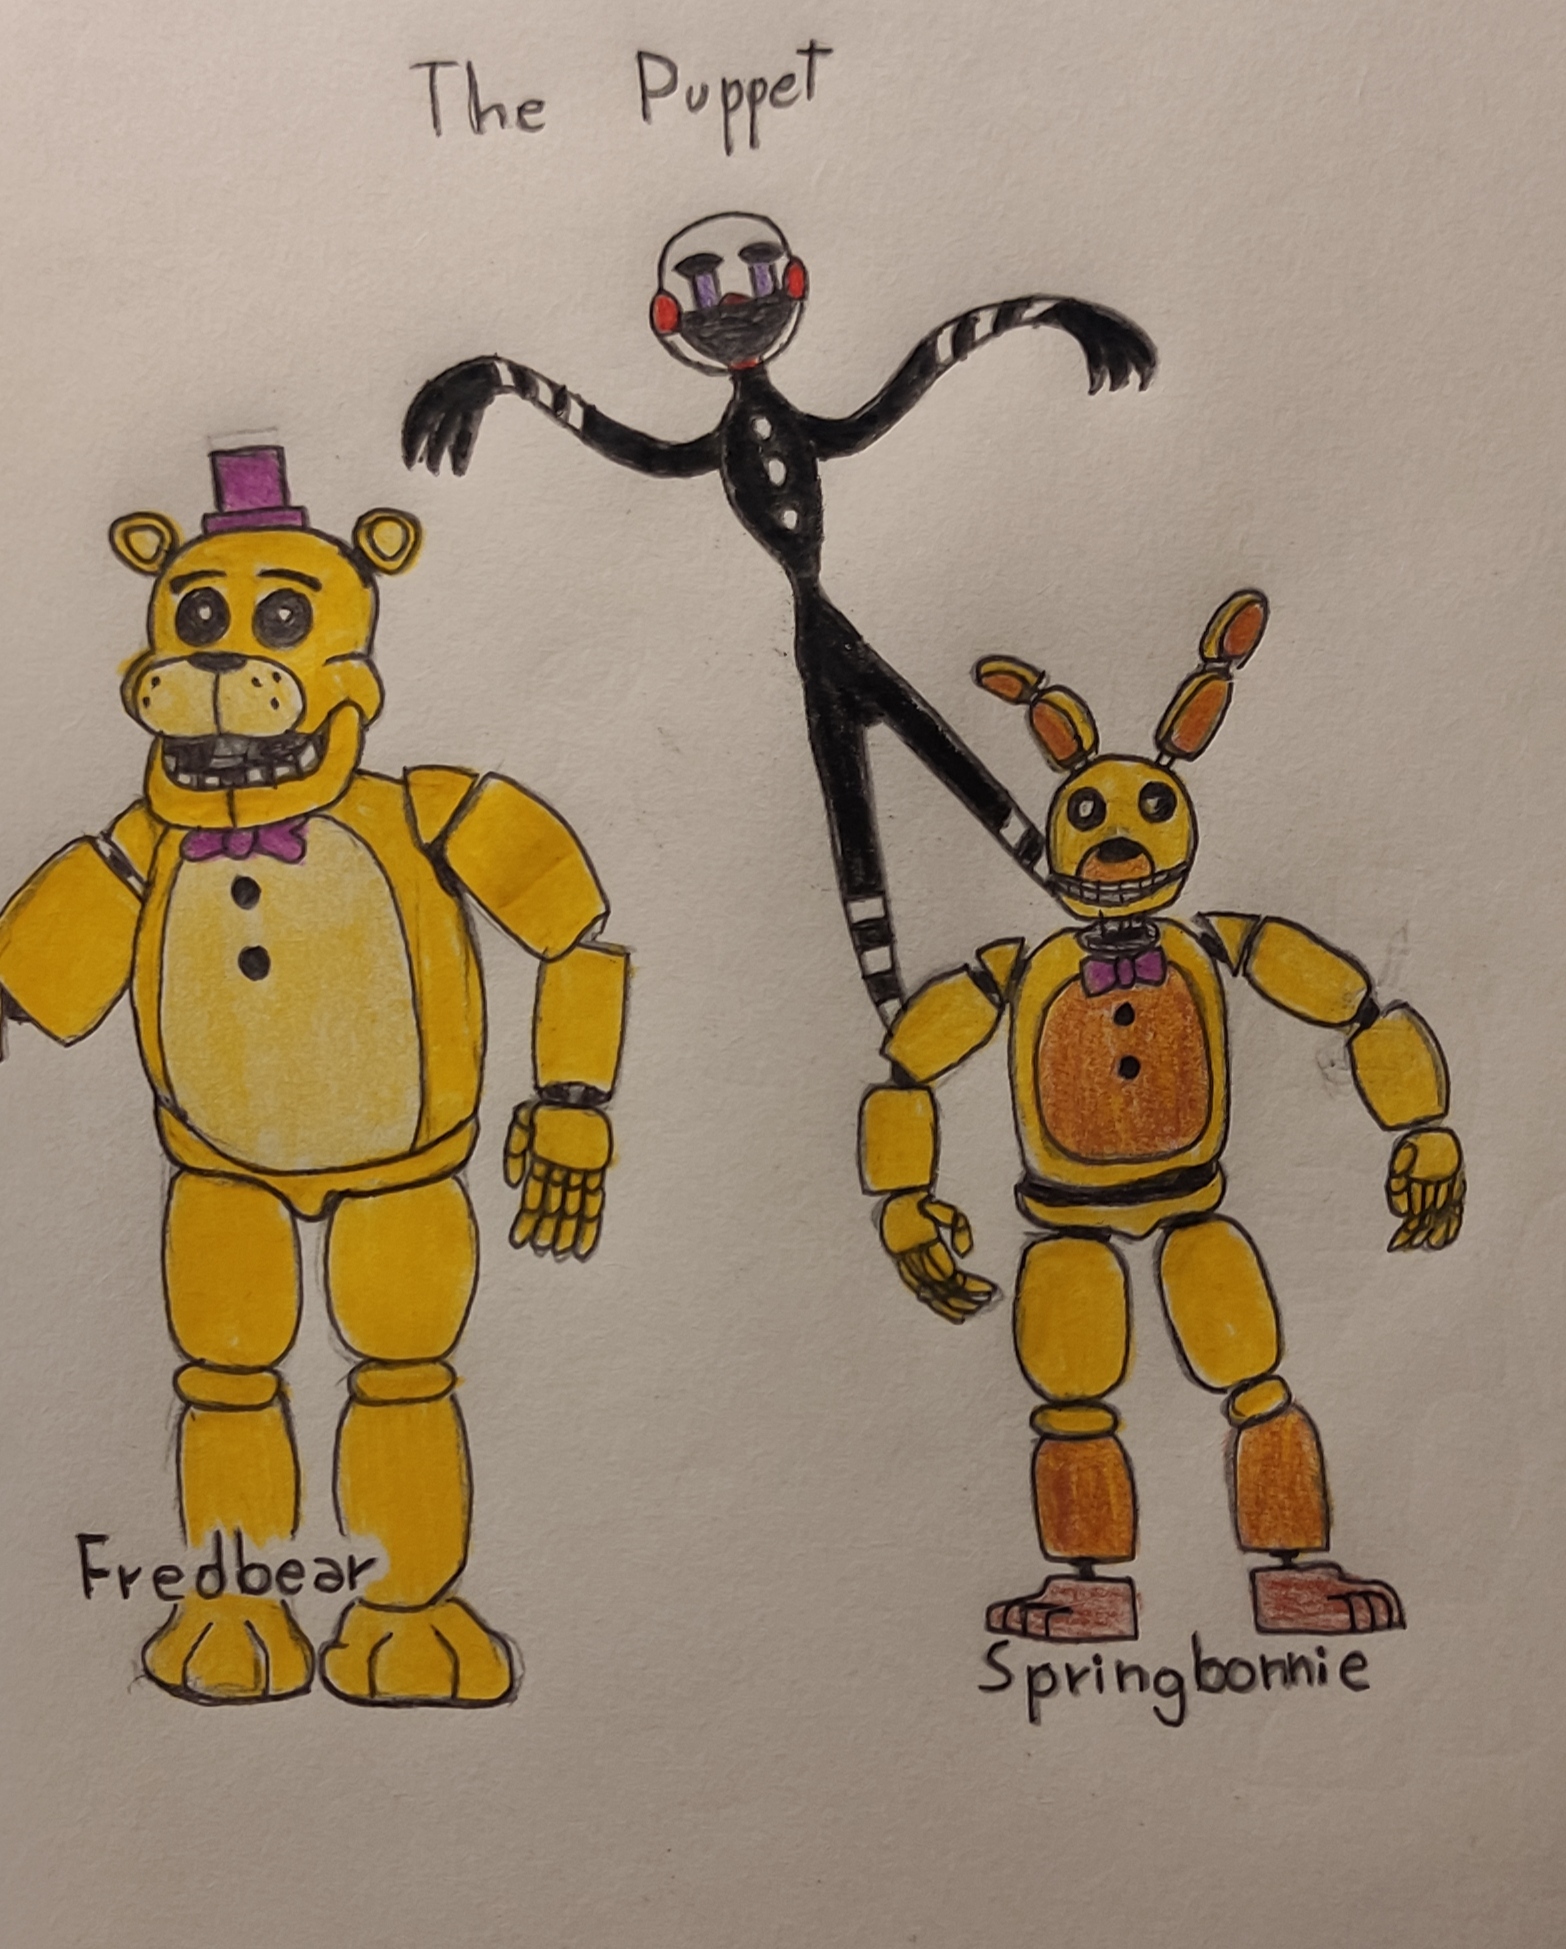 Showcasing Fredbear, Spring Bonnie and Marionette in Fredbears